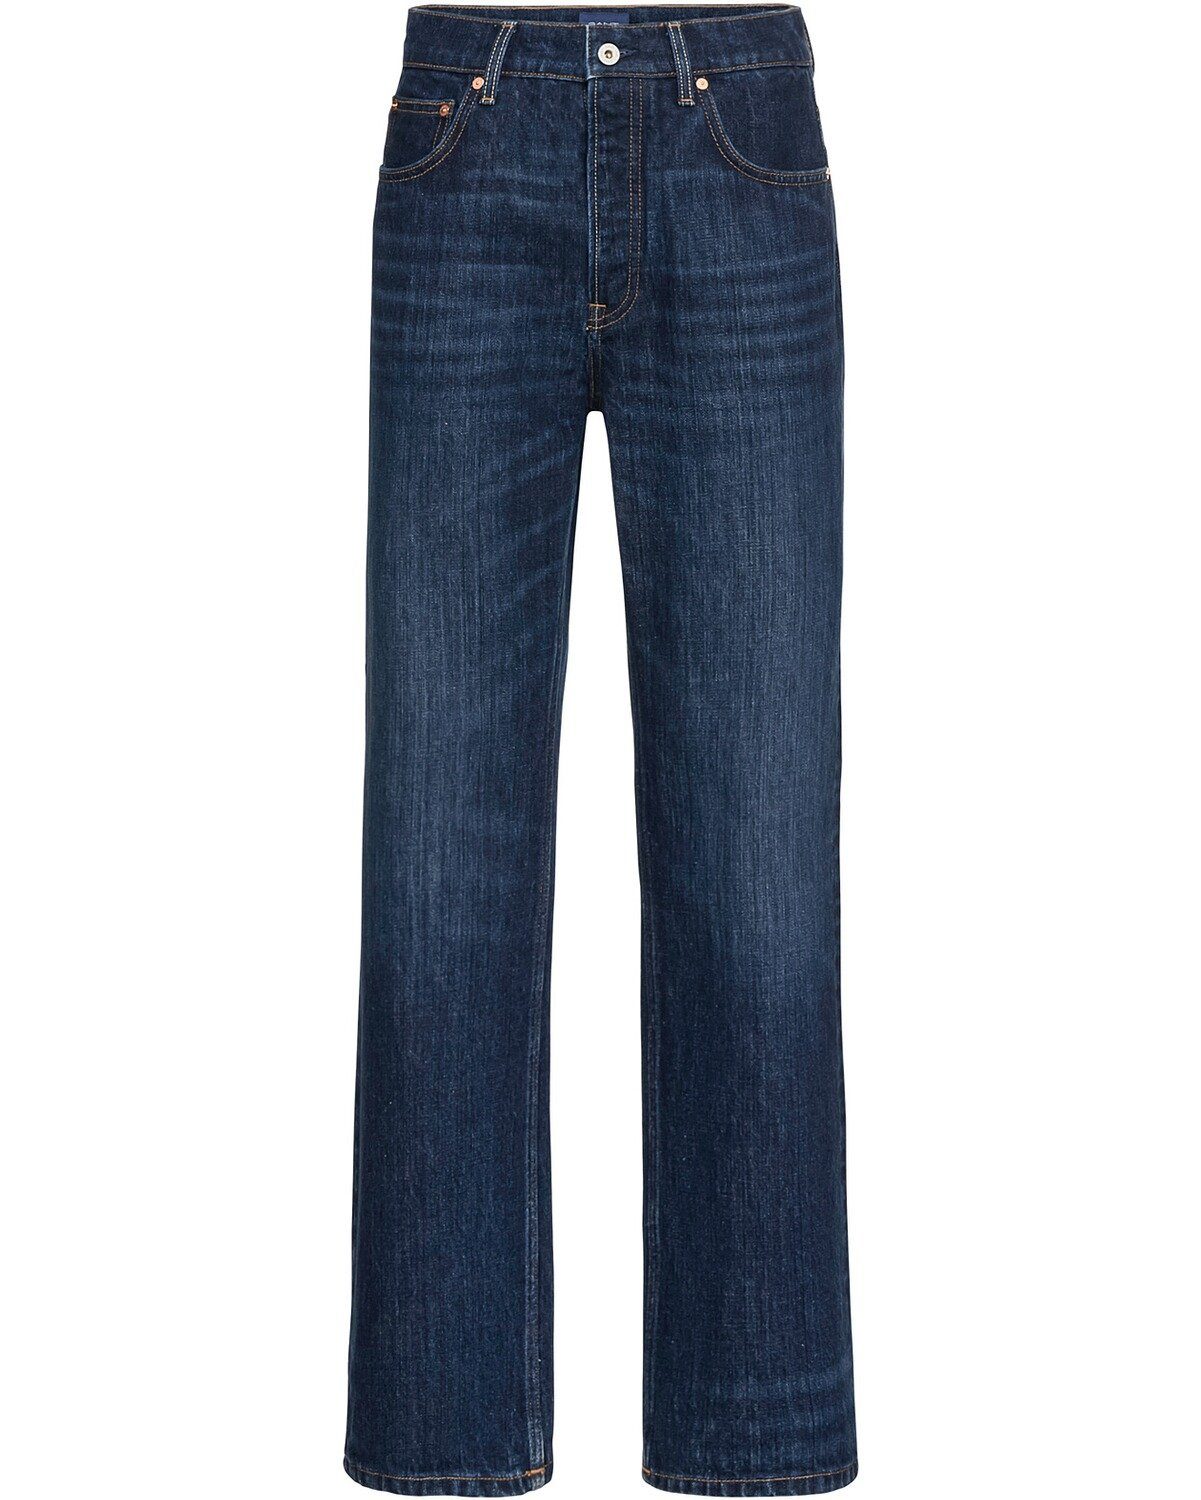 Günstige Gant Jeans für Damen kaufen » Gant Jeans SALE | OTTO